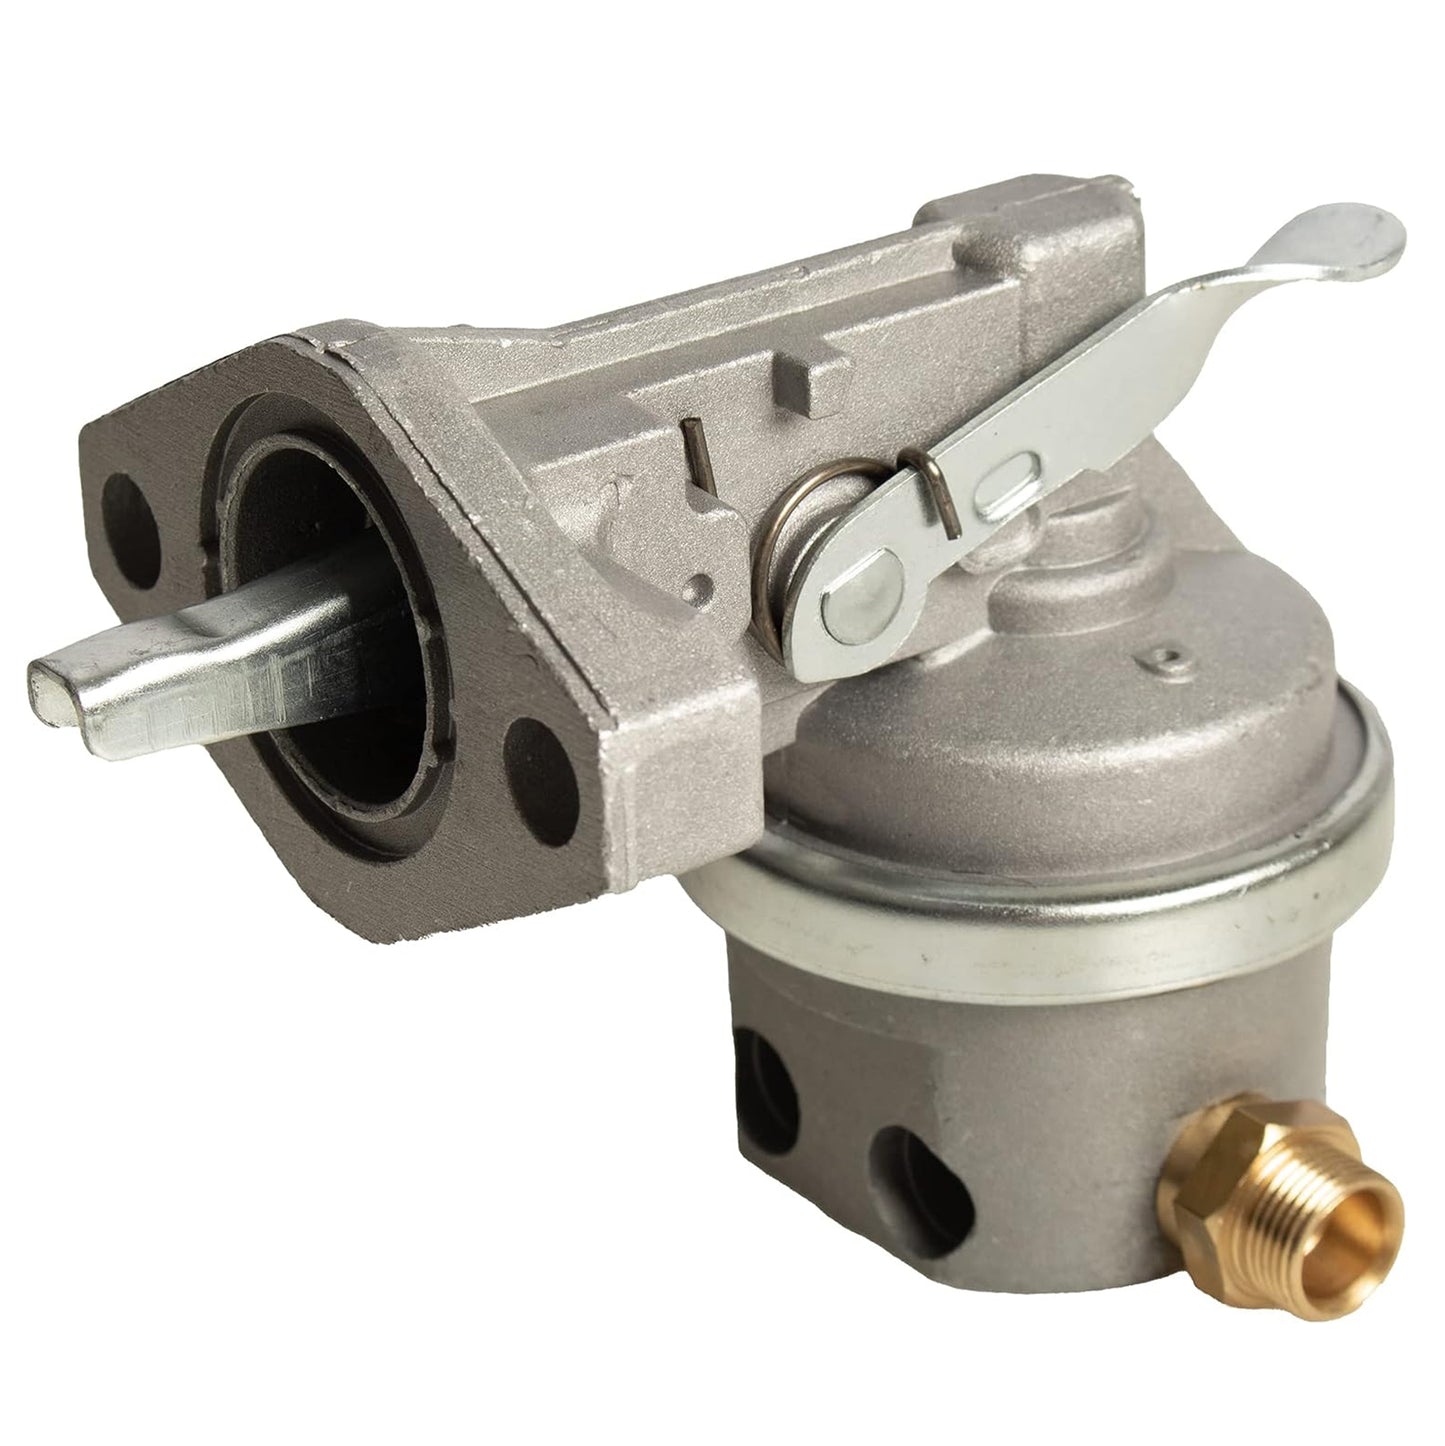 RE68345 Fuel Pump Compatible With John Deere 4045DF270 4045HF150 4045HF157